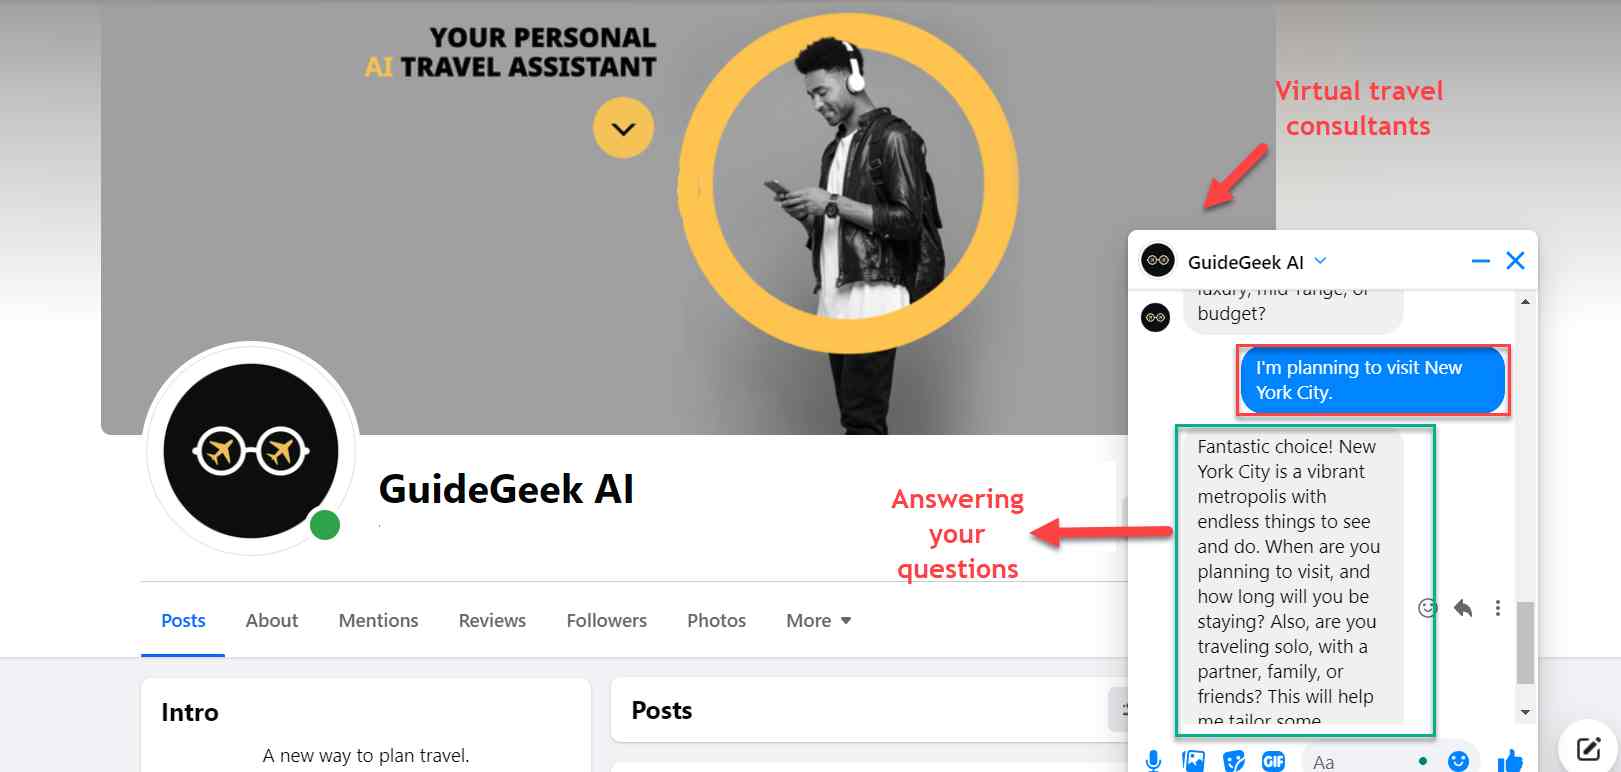  guidegeek-ai-chatbot-virtual-consultant-rispondere alle domande in tempo reale-fornire raccomandazioni personalizzate. 